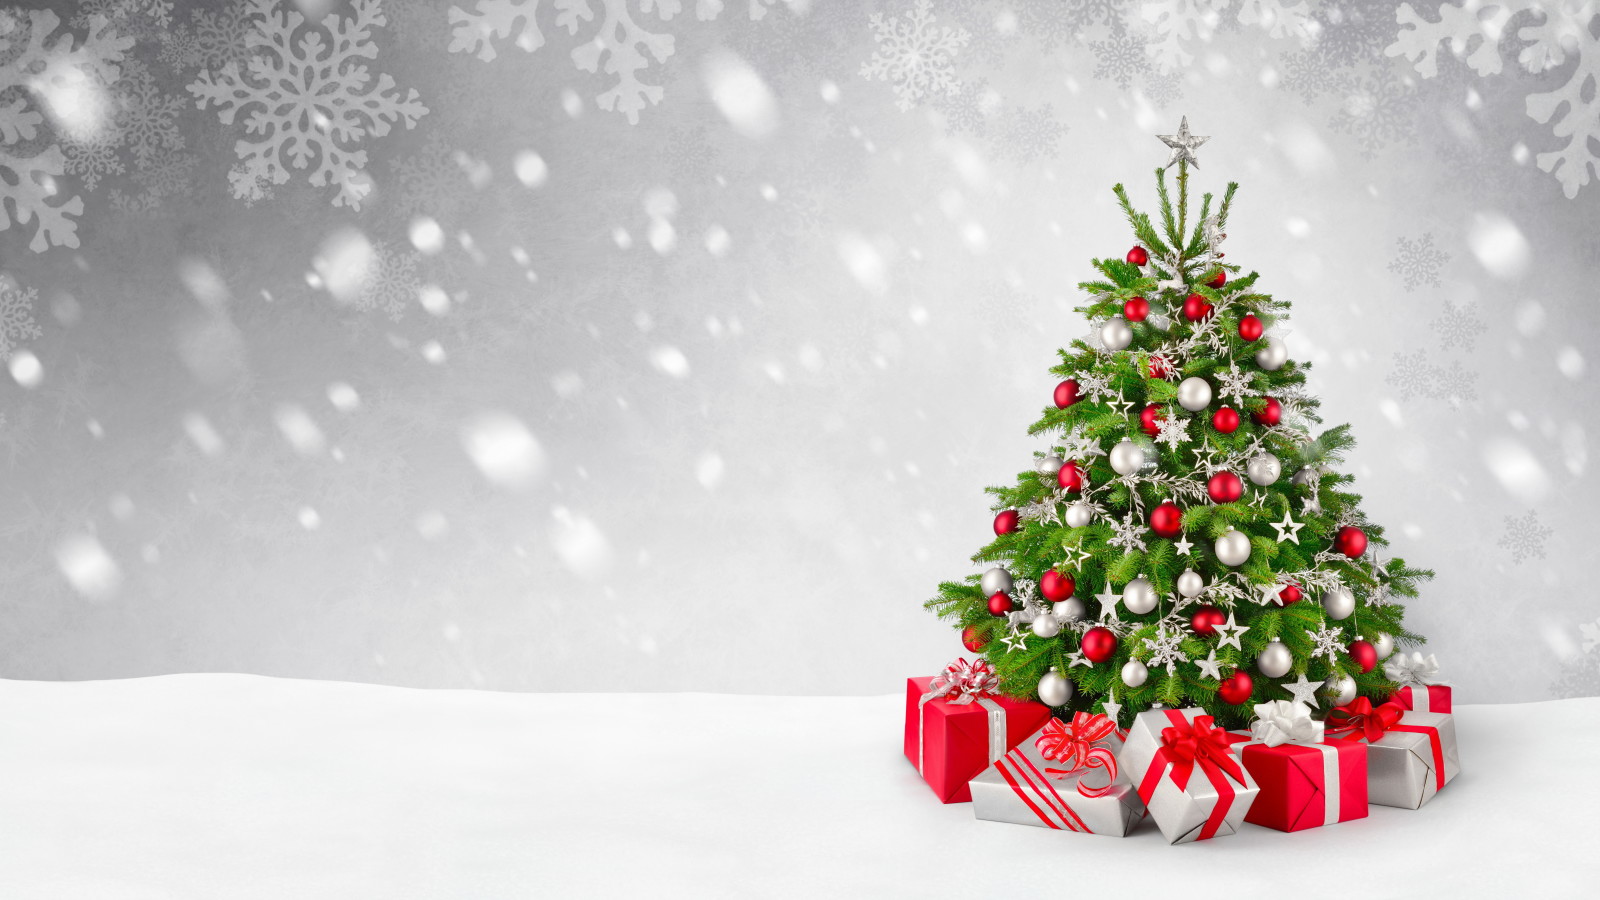 雪, 木, 新年, クリスマス, デコレーション, メリー, 冬